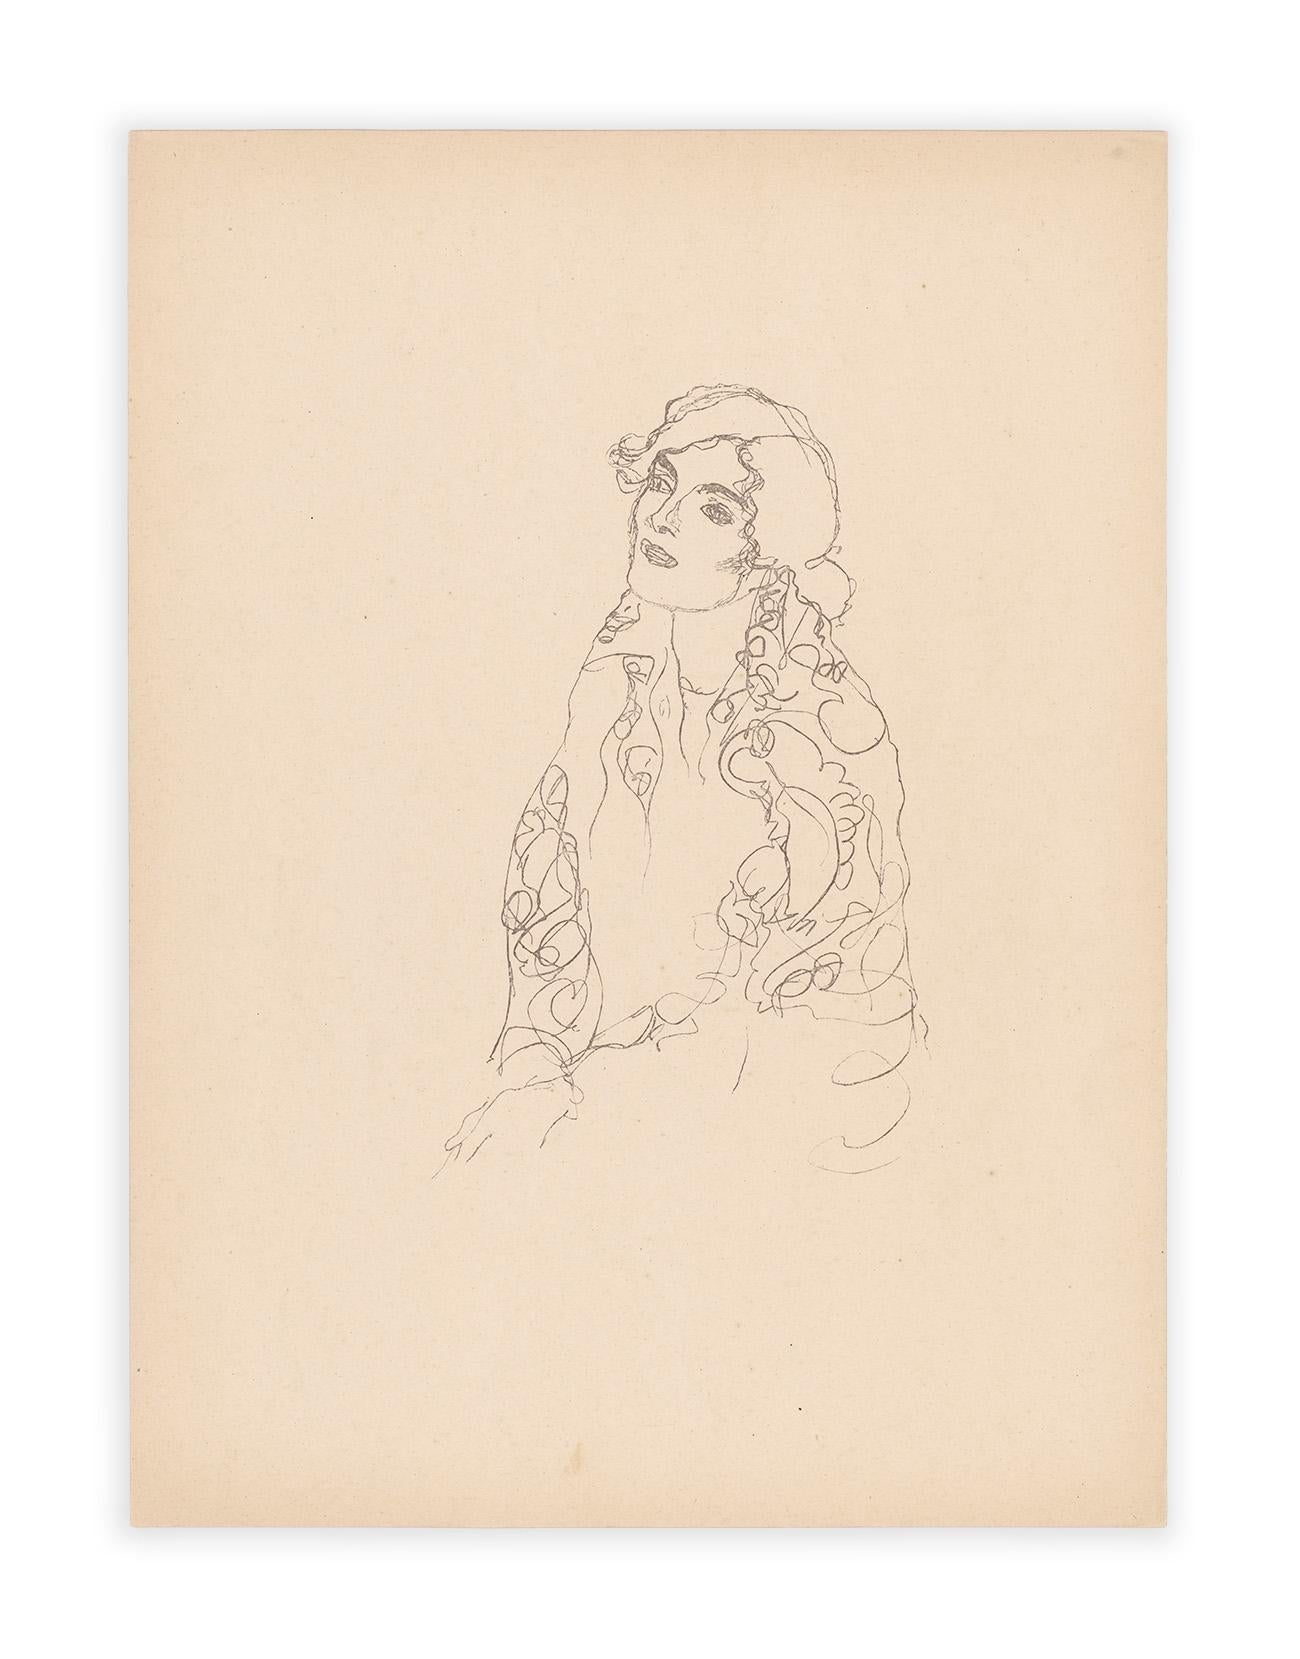 Sitzende Frau mit Schal, Gustav Klimt Handzeichnungen (Sketch), 1922 (Wiener Secession), Print, von (after) Gustav Klimt